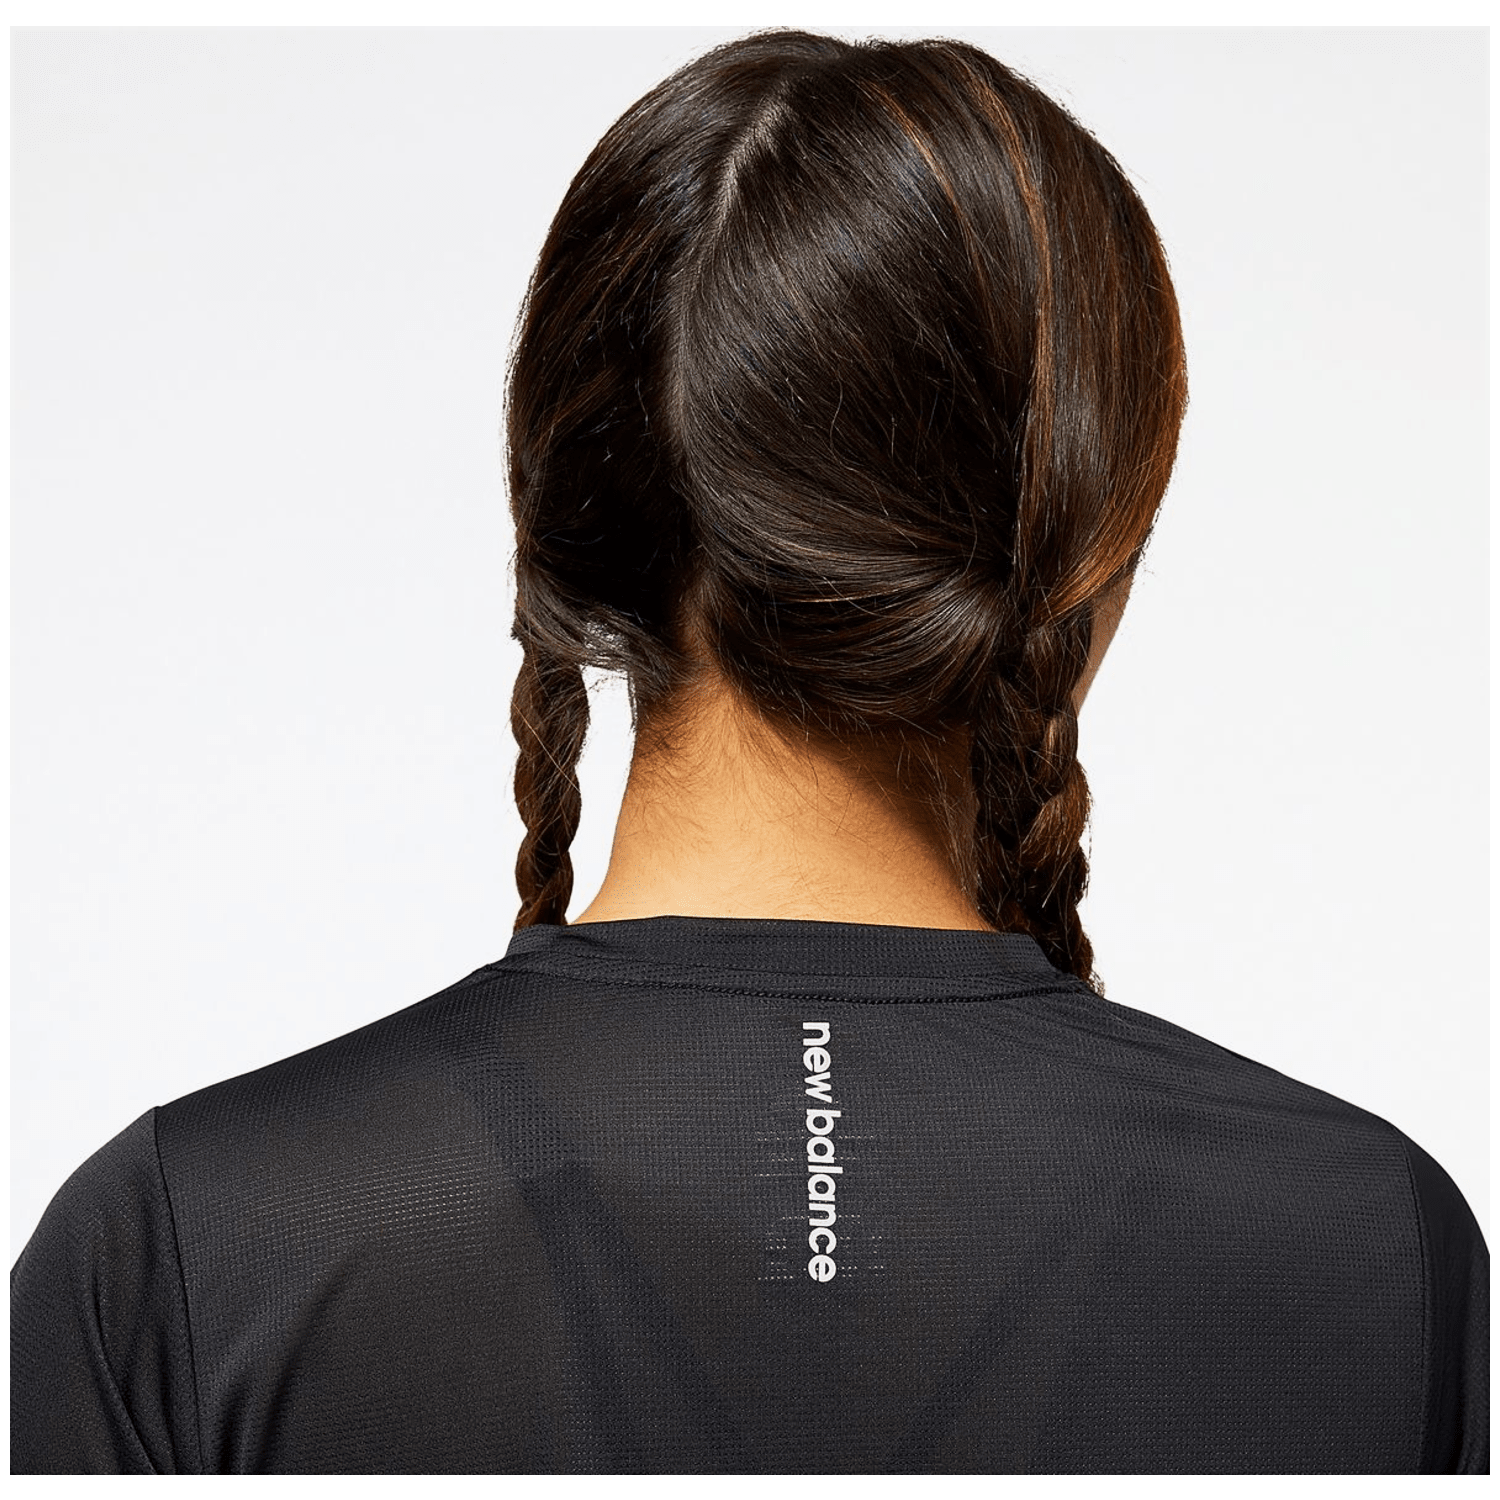 New Balance Accelerate Short Sleeve Top Damen T-Shirt